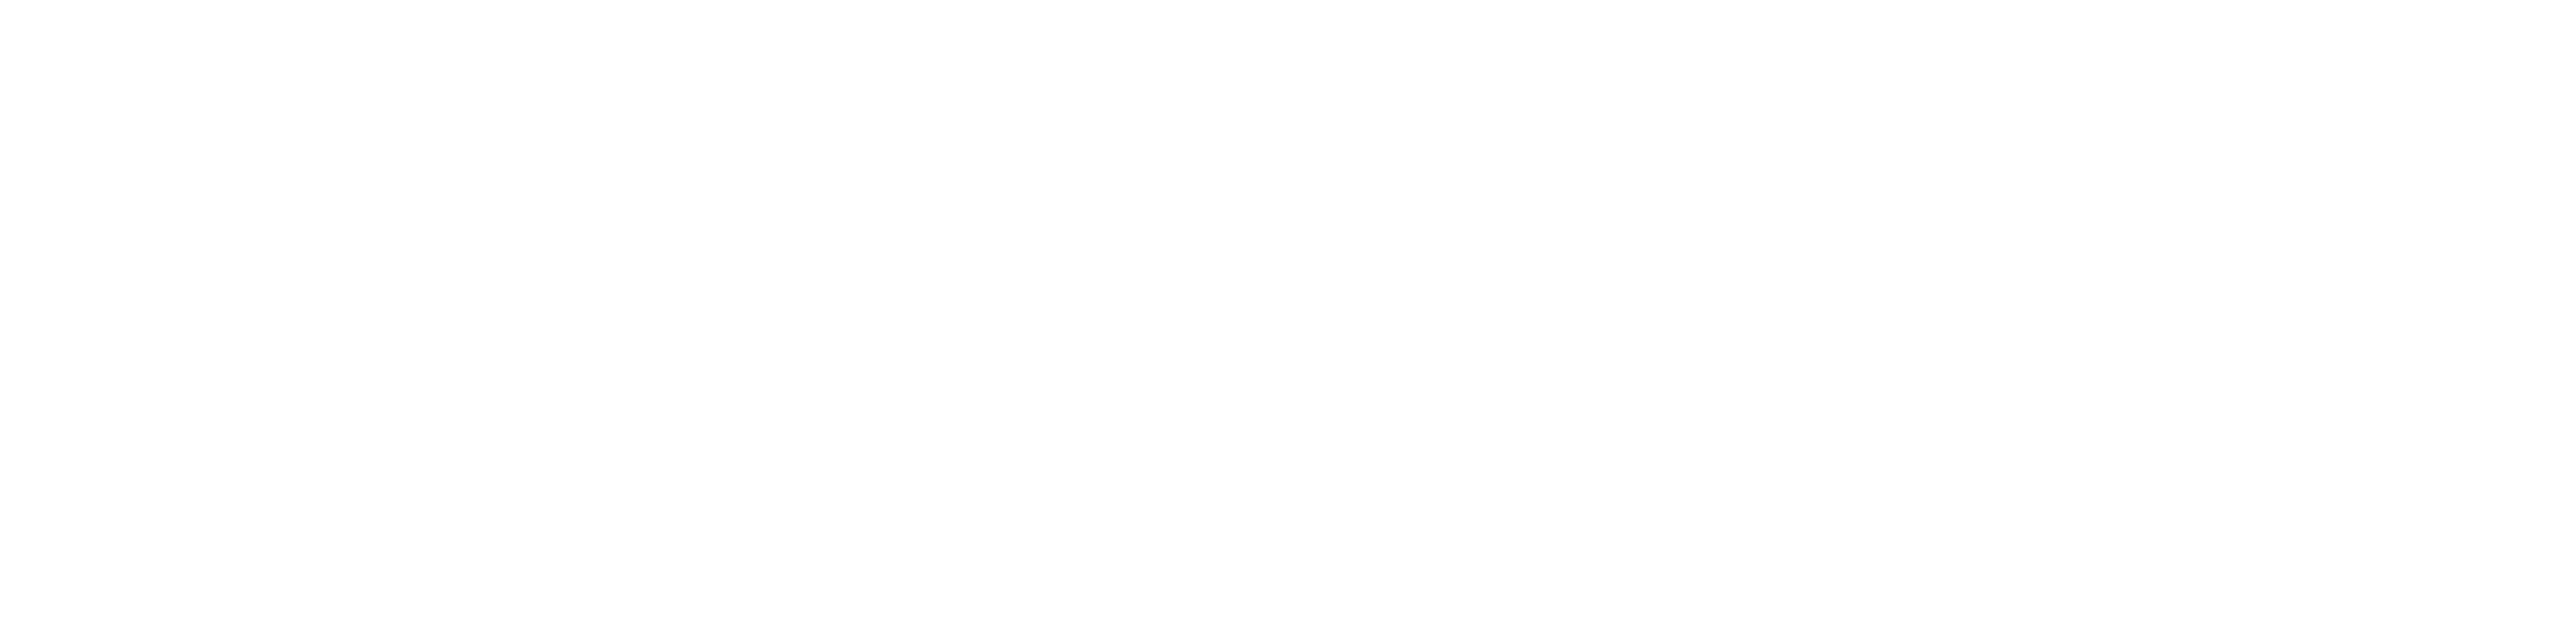 Djizhub